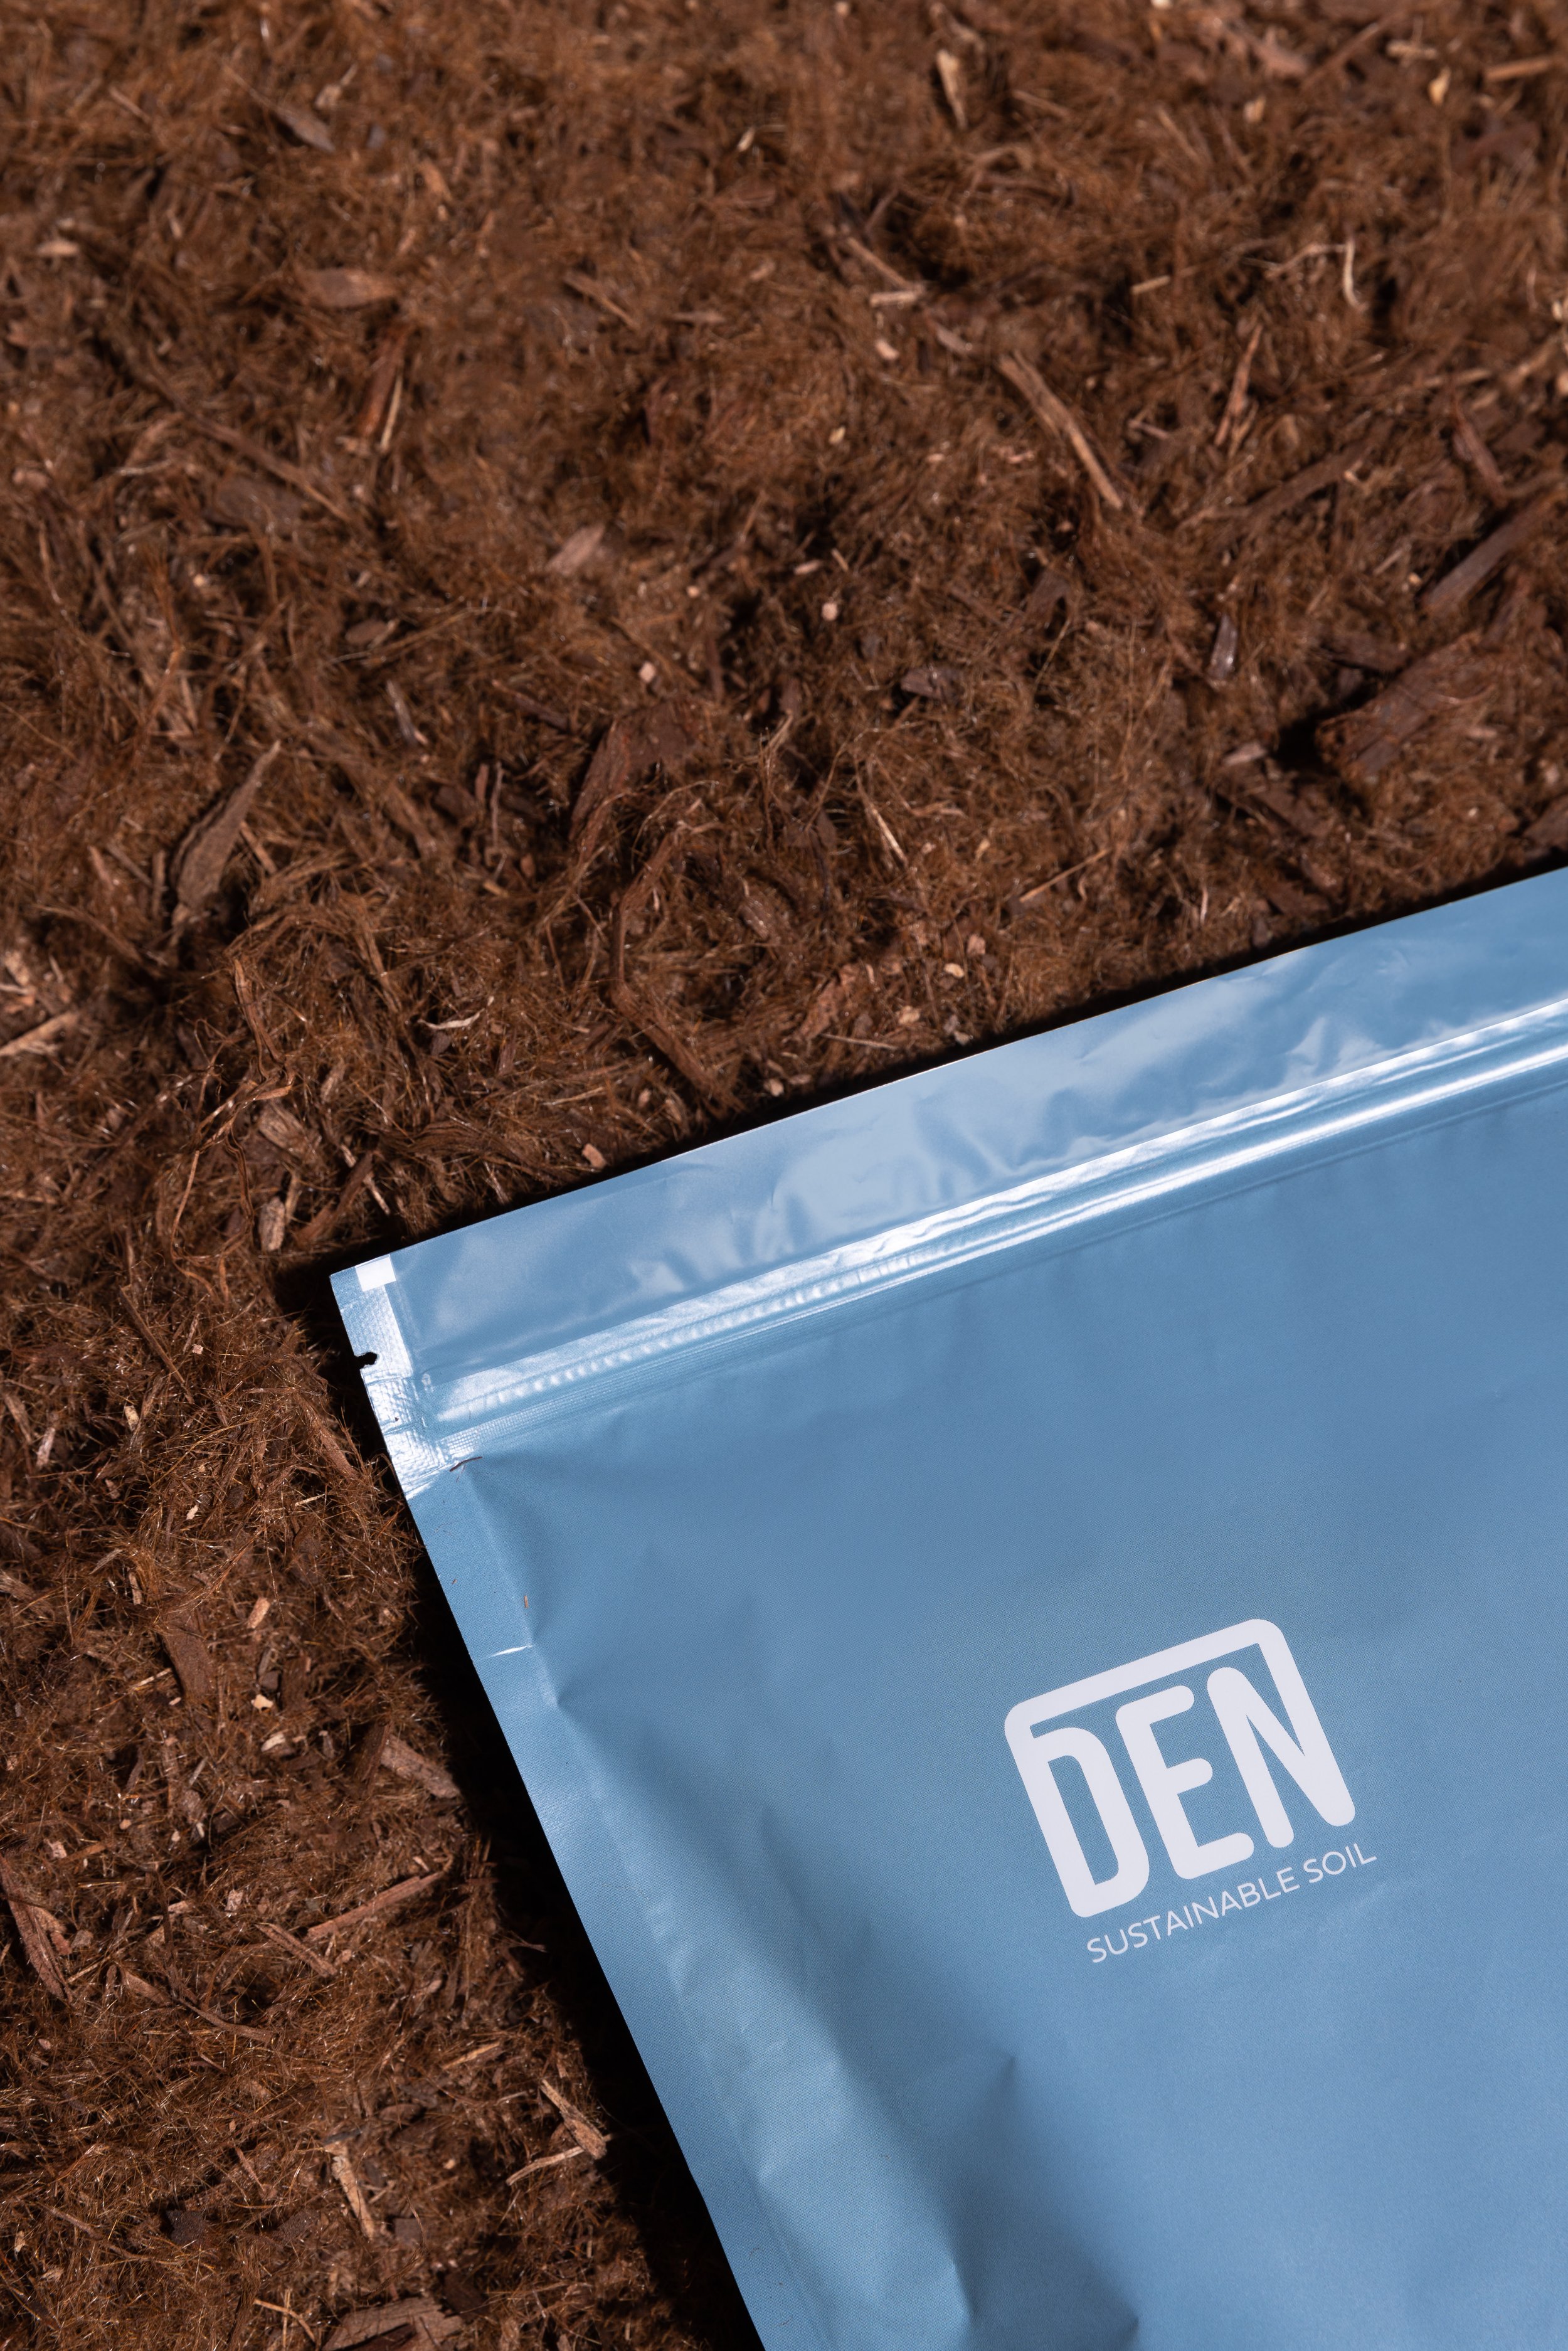 DEN-Package-On-Soil.jpg